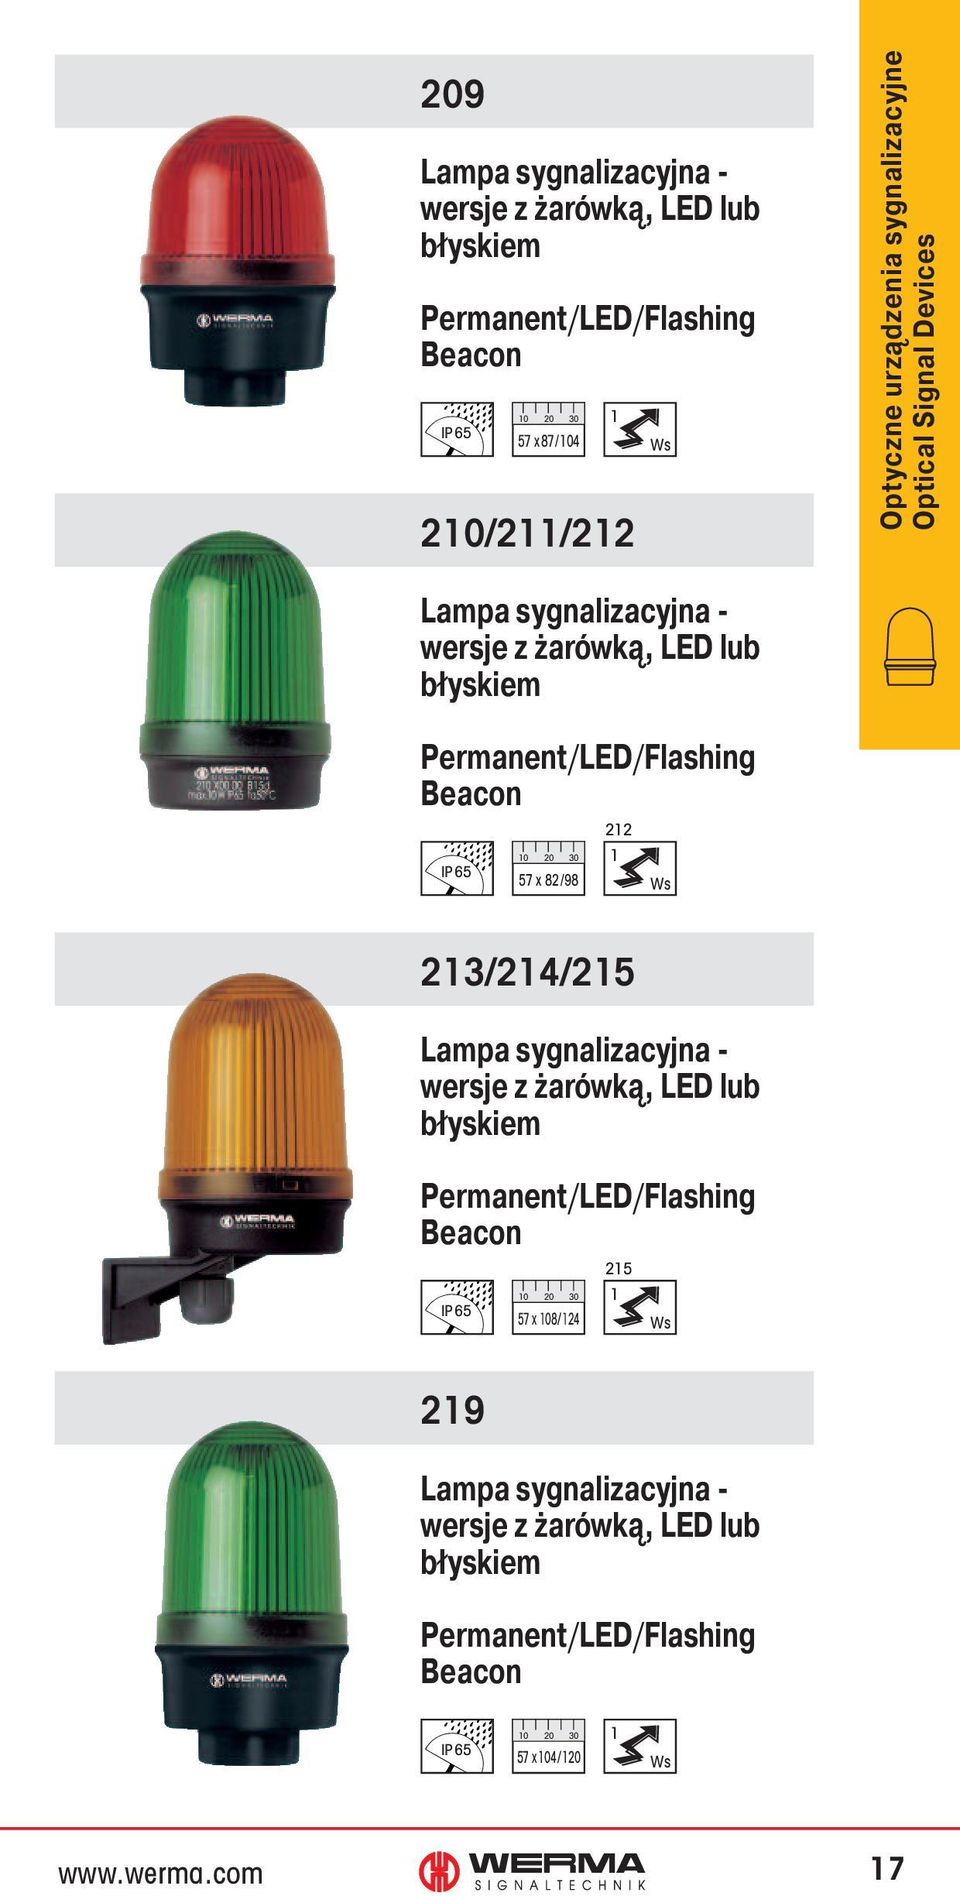 Permanent/LED/Flashing Beacon 57 x 82/98 212 1 213/214/215 Lampa sygnalizacyjna - wersje z żarówką, LED lub błyskiem